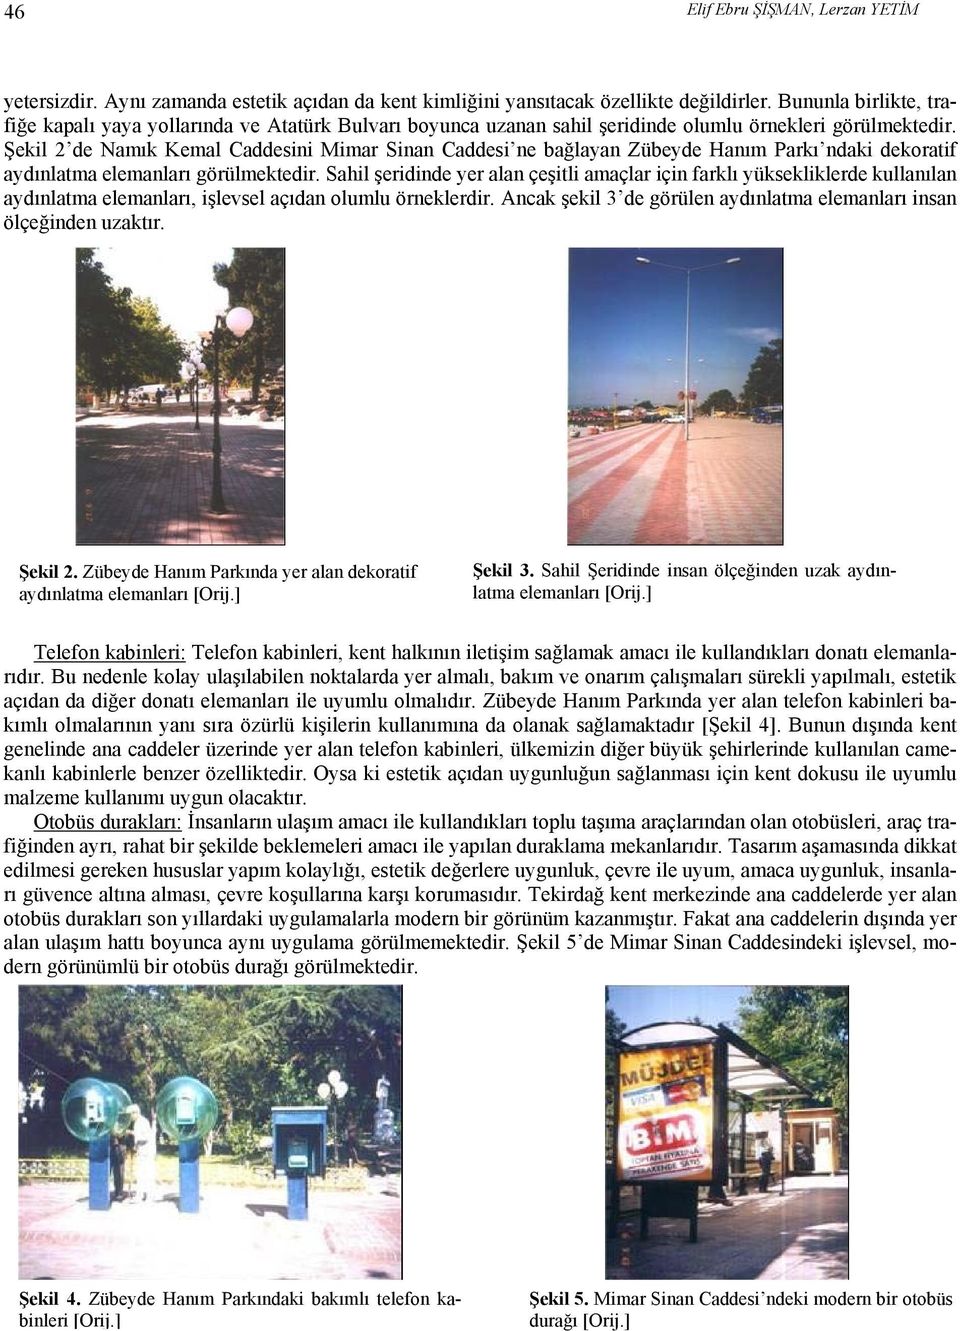 Şekil 2 de Namık Kemal Caddesini Mimar Sinan Caddesi ne bağlayan Zübeyde Hanım Parkı ndaki dekoratif aydınlatma elemanları görülmektedir.